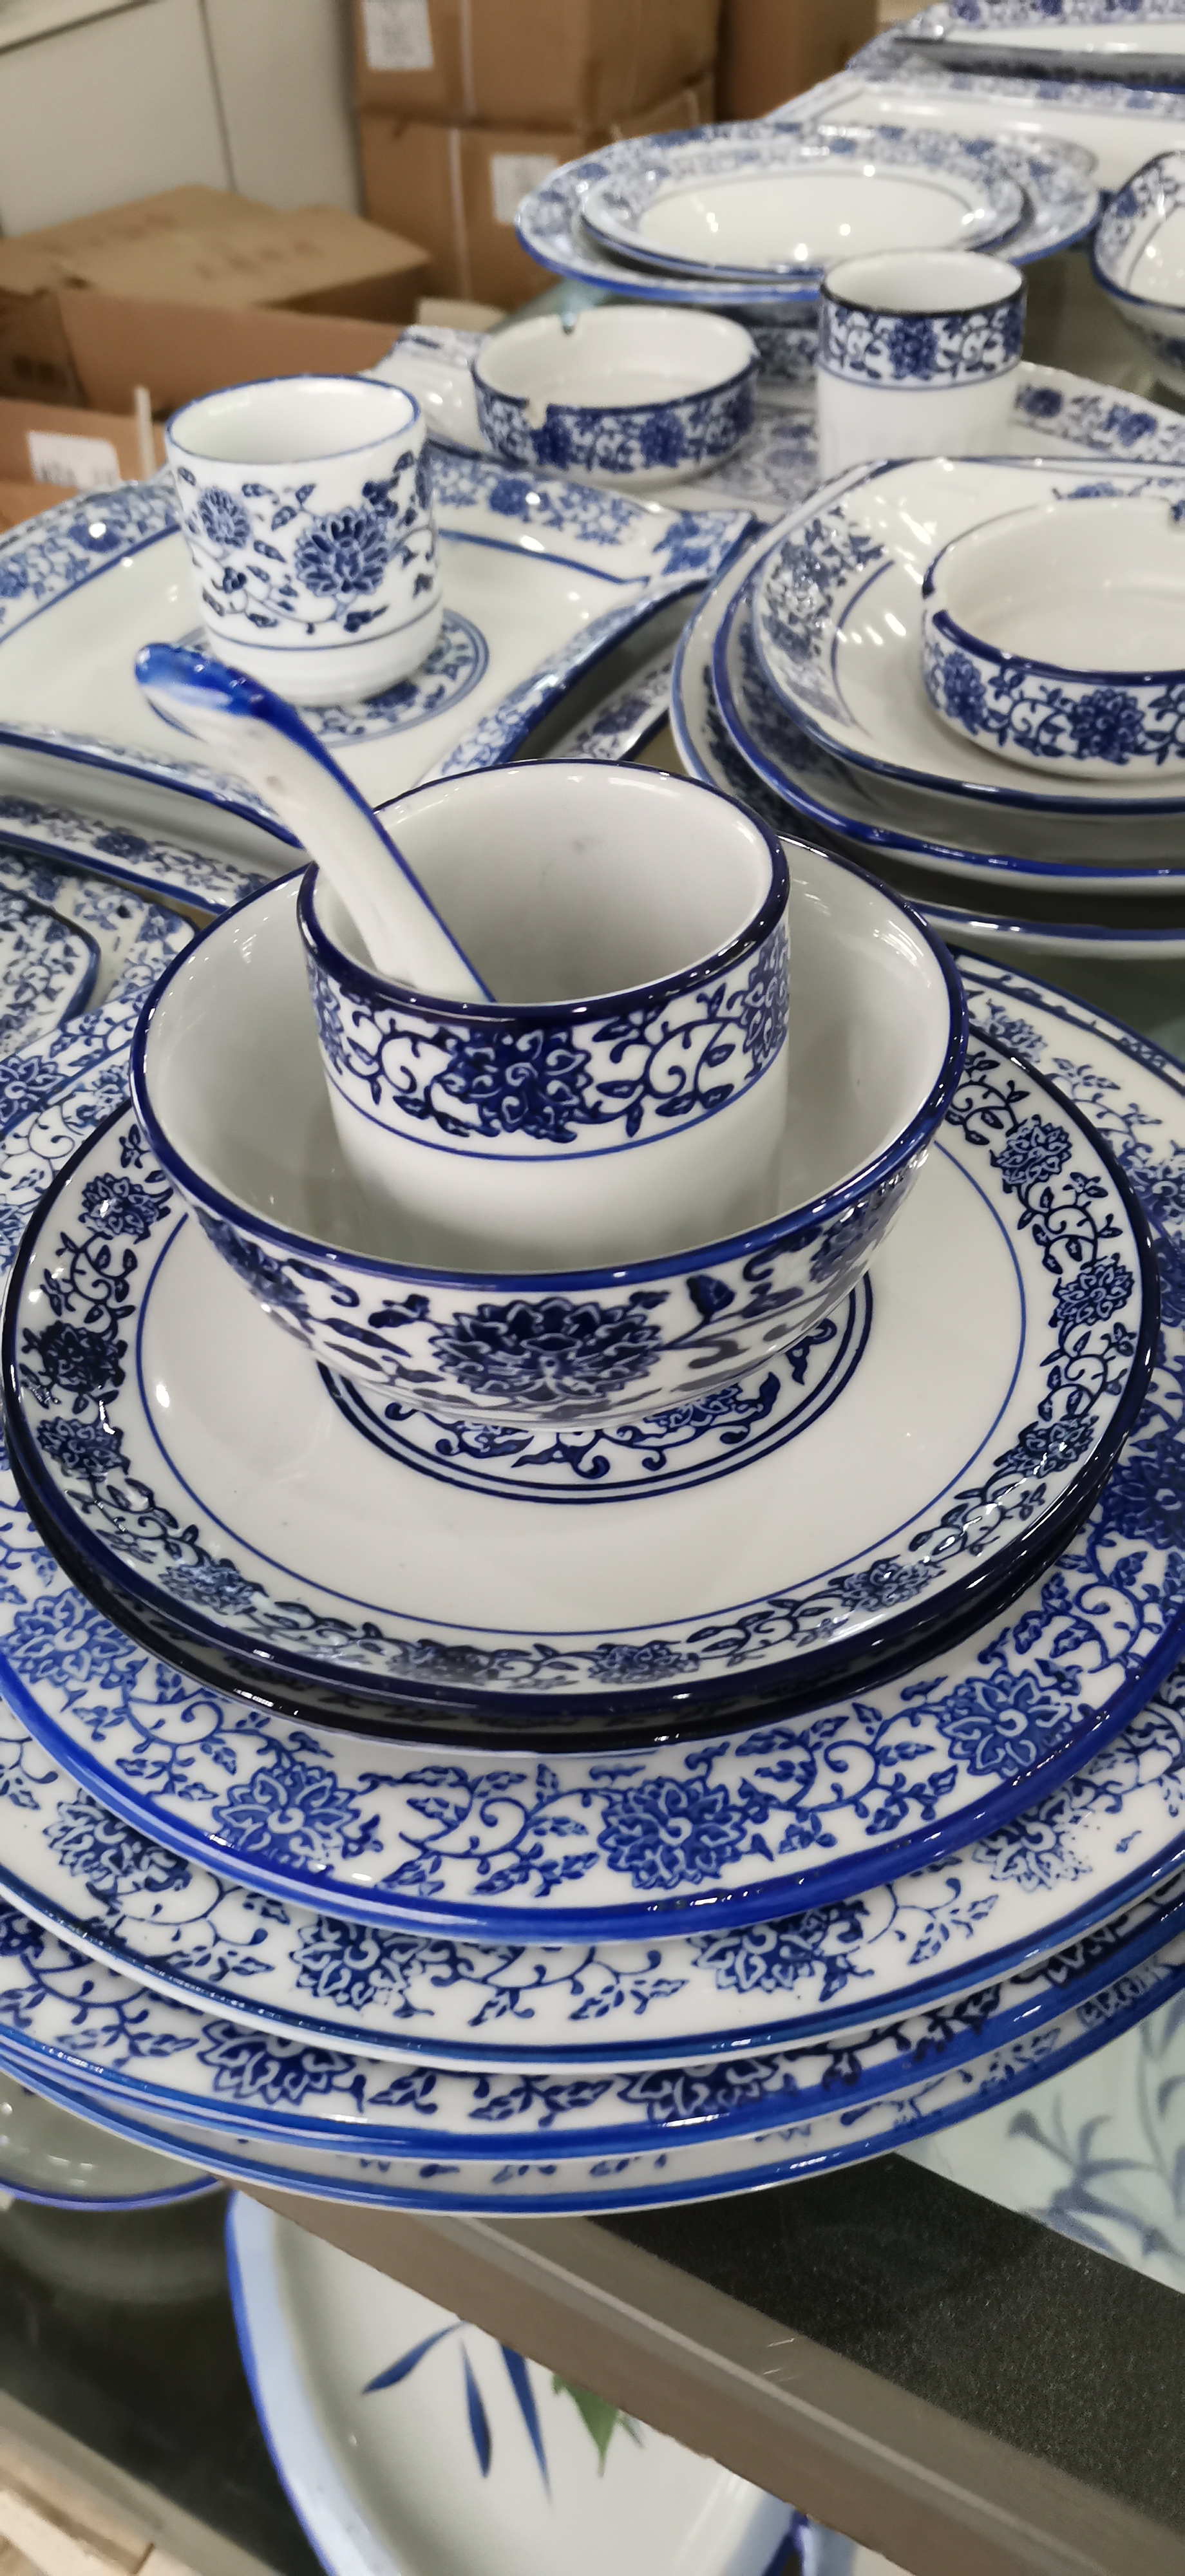 厂家直销婚庆陶瓷餐具四件套 亮丽陶瓷家用碗盘碟套装礼品瓷制造生产商